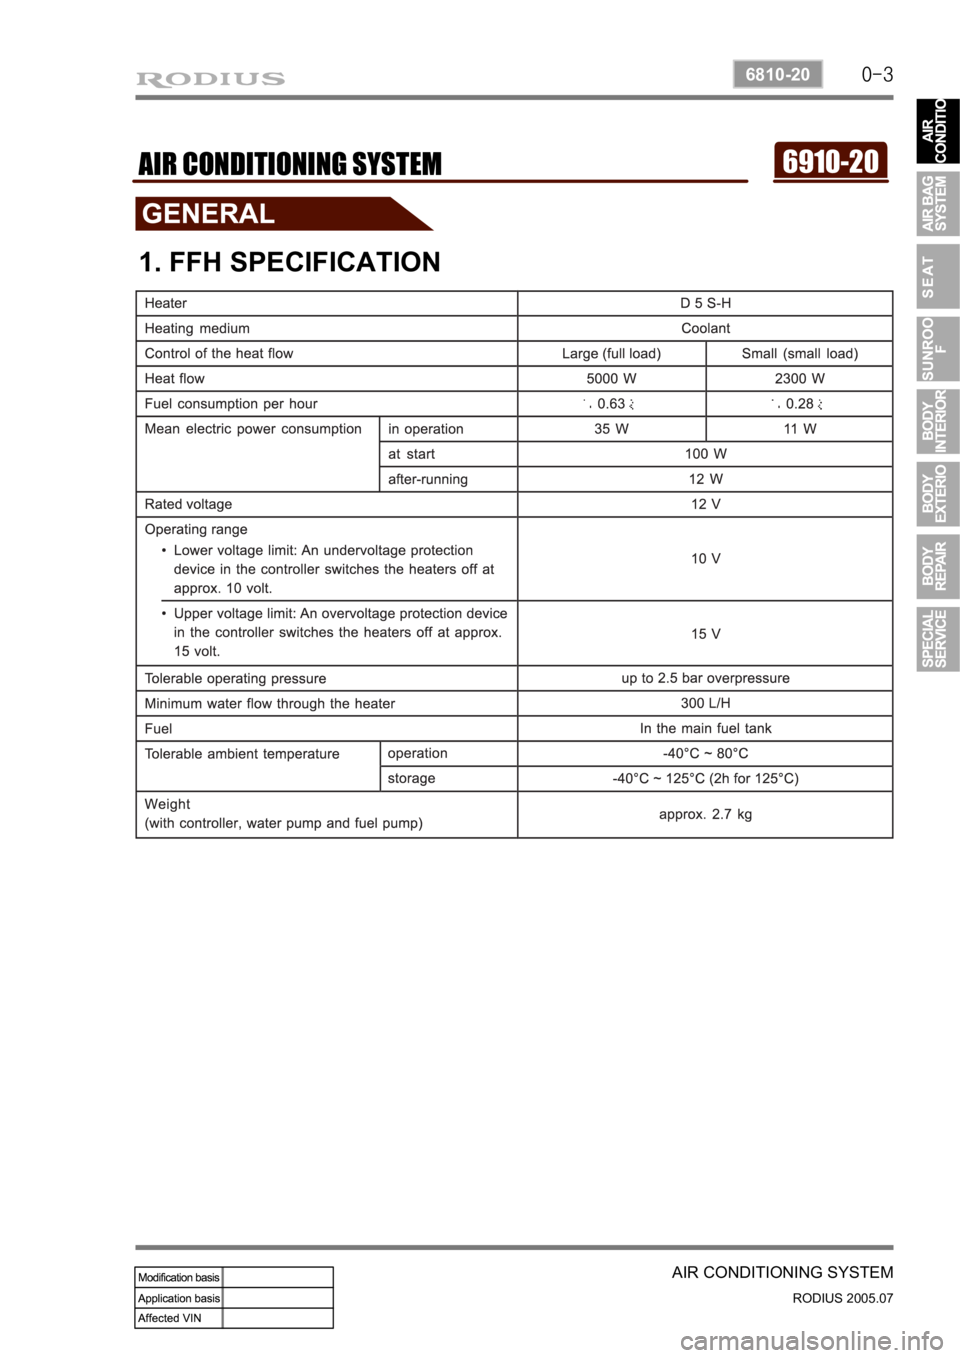 SSANGYONG RODIUS 2005  Service Manual 0-3
AIR CONDITIONING SYSTEM
RODIUS 2005.07
6810-20 
6910-20AIR CONDITIONING SYSTEM
1. FFH SPECIFICATION 